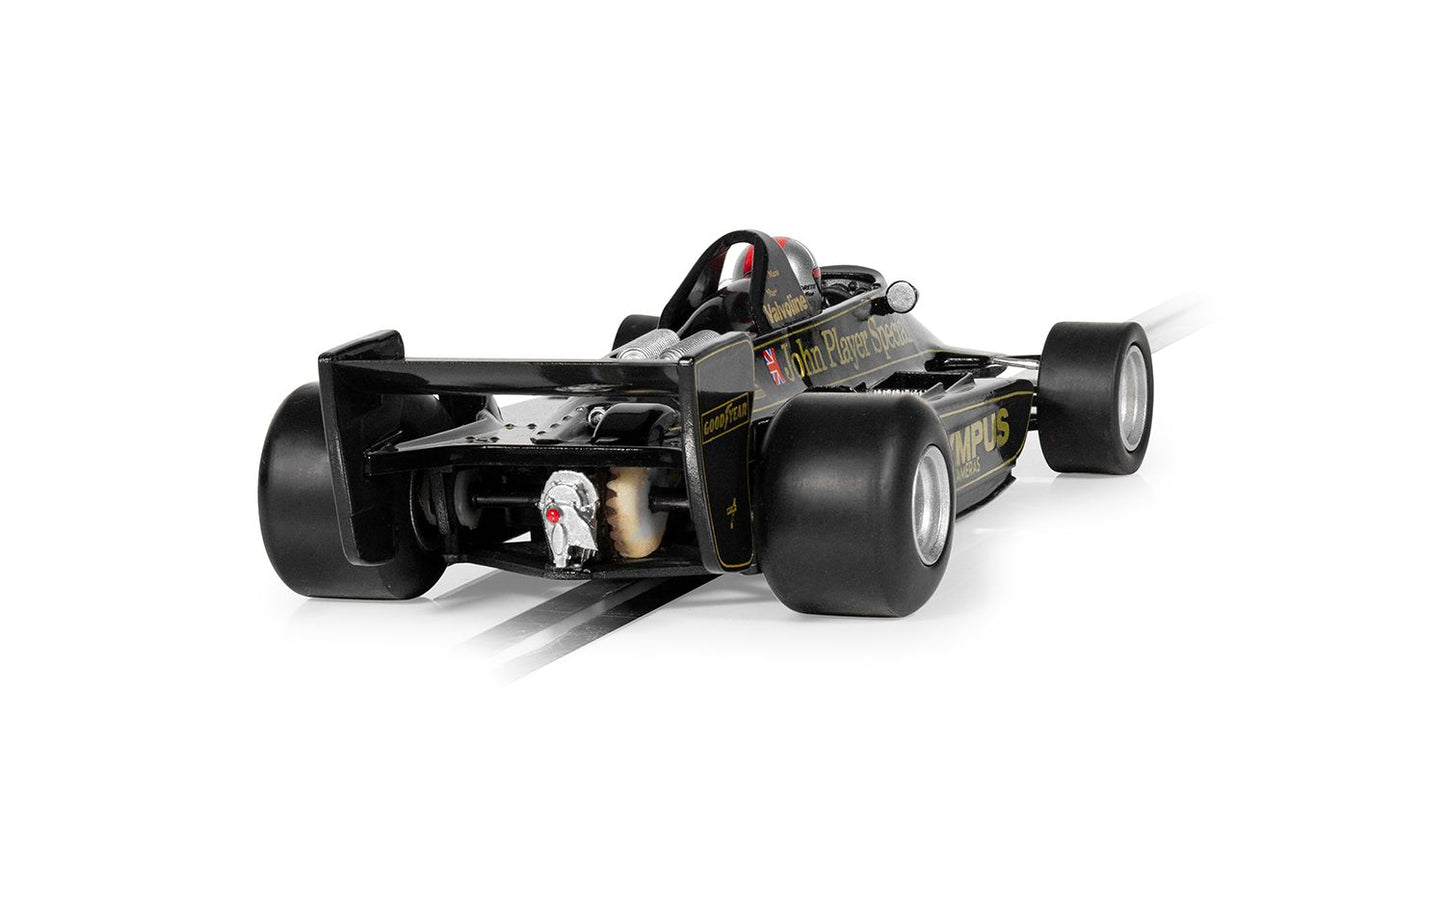 [pre-order] Scalextric Lotus 79 - Mario Andretti - 1978 World Champion Edition (C4494)